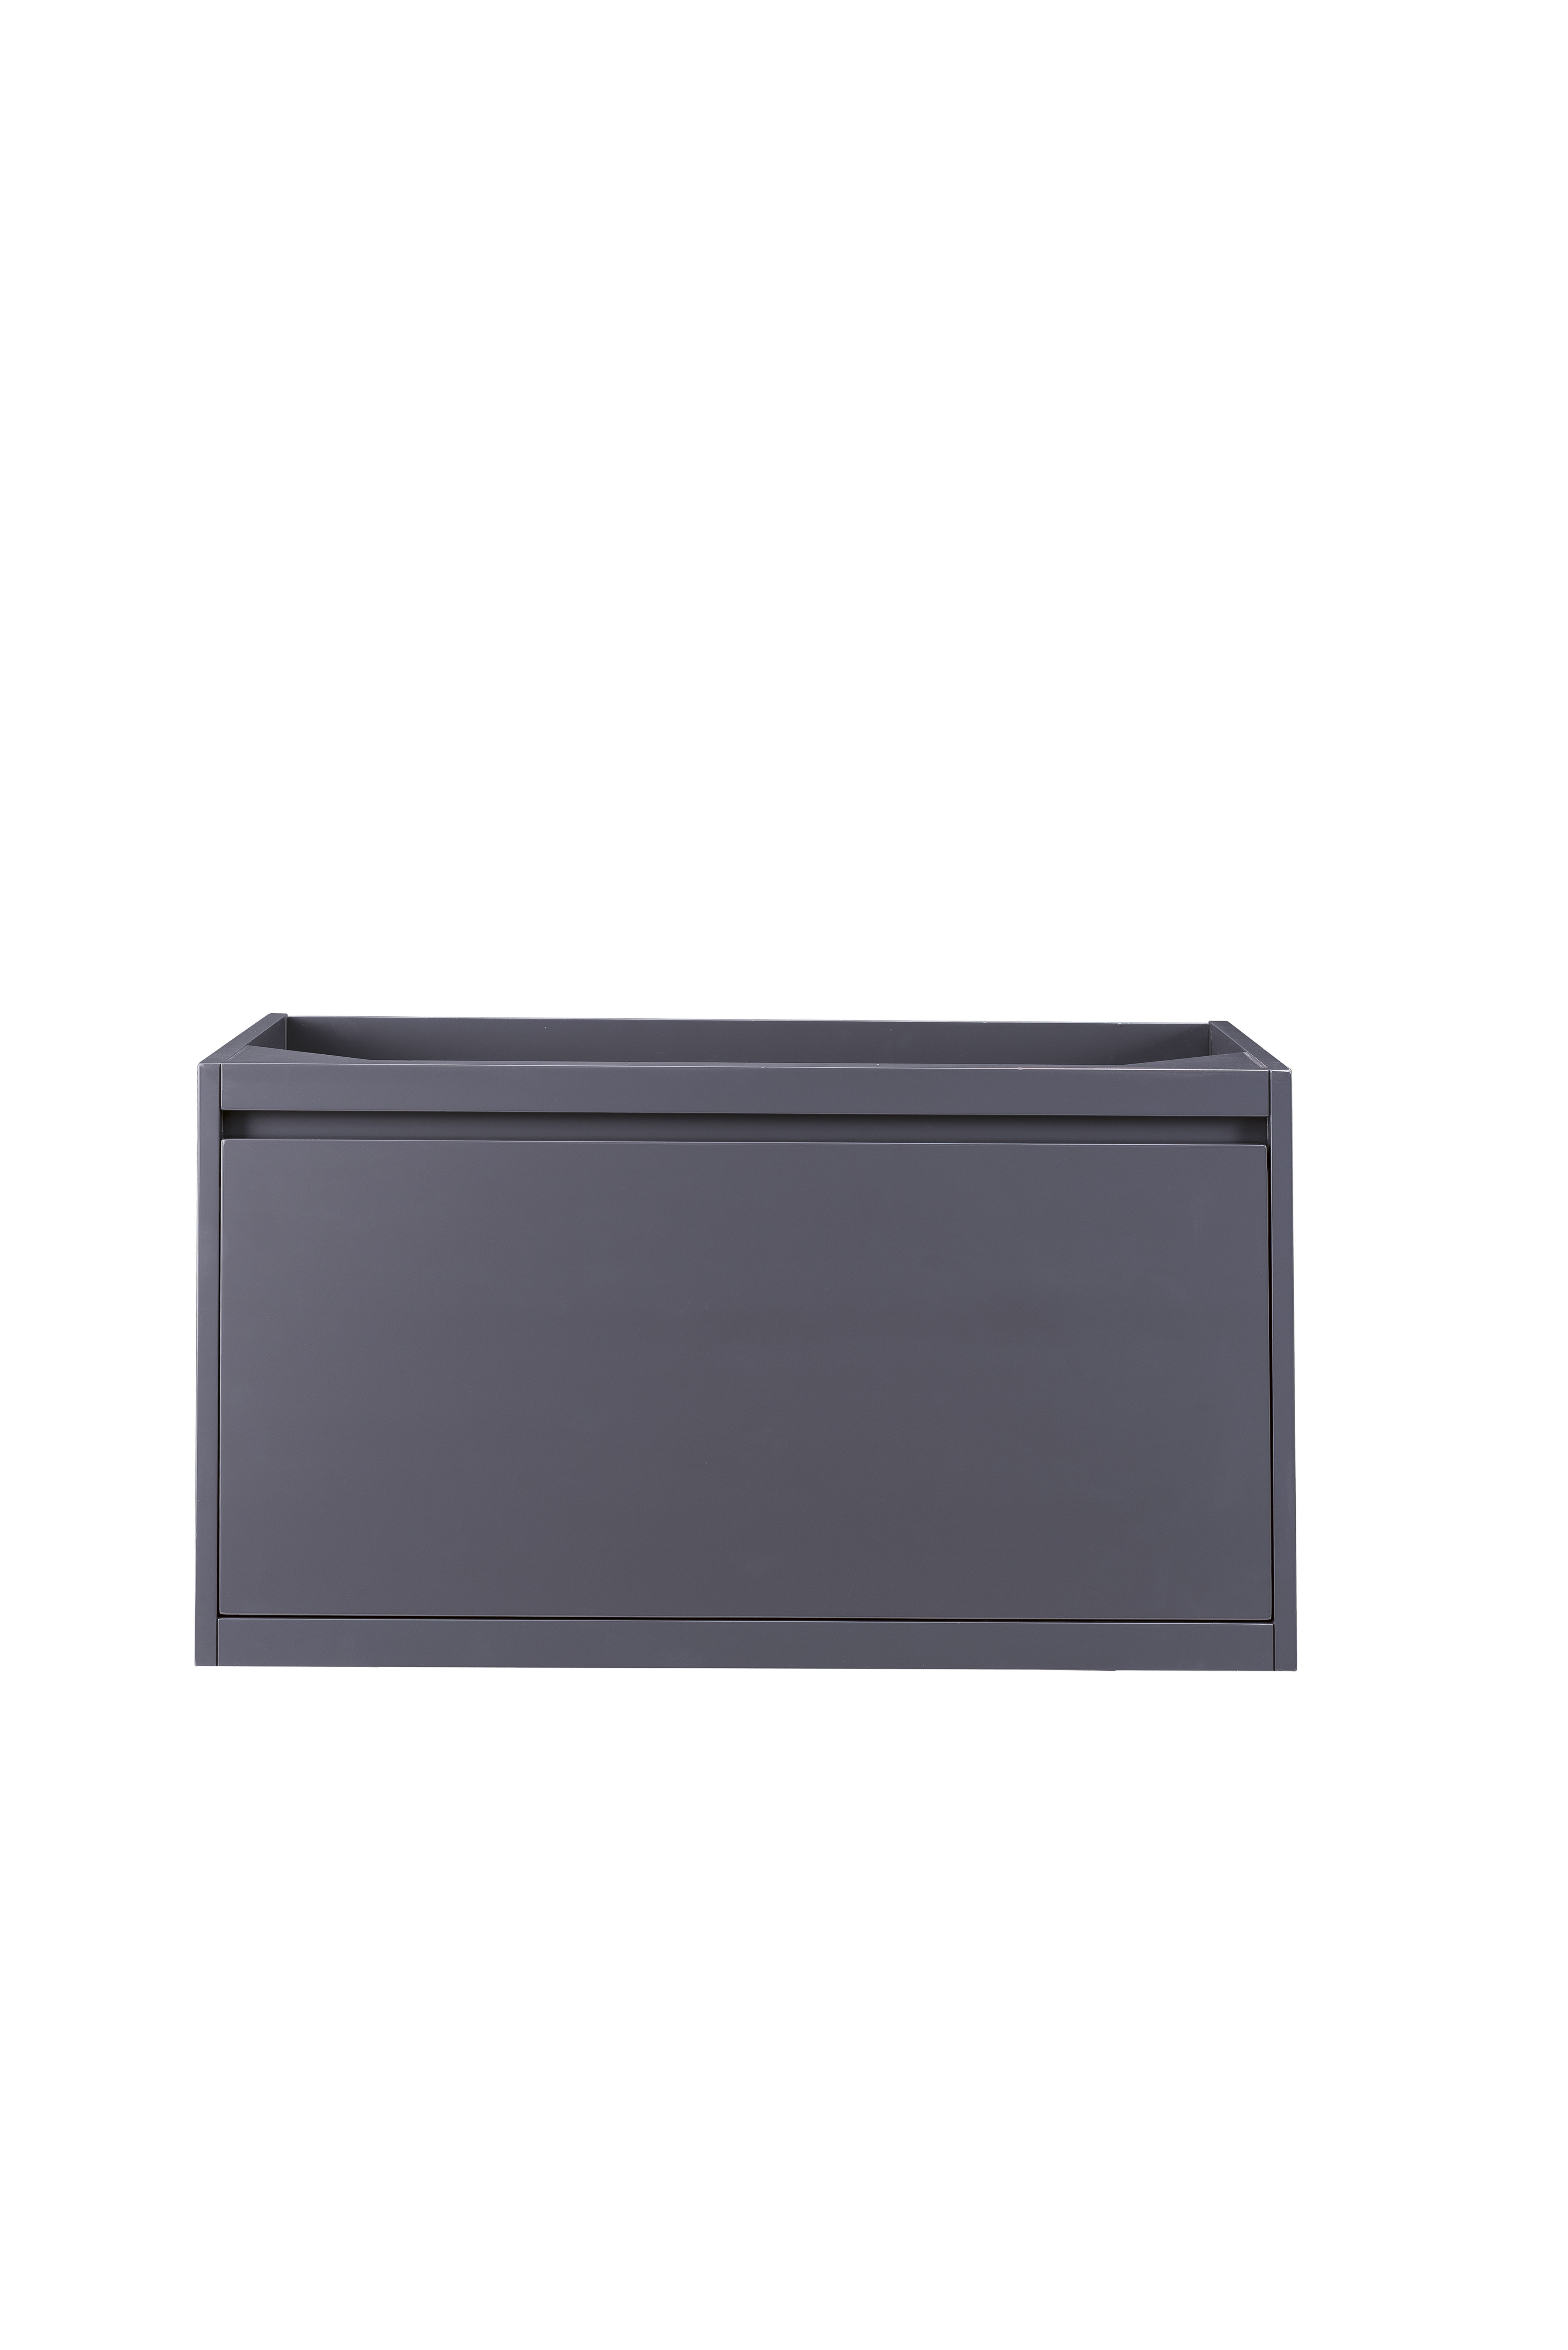 James Martin 801-V35.4-MGG Milan 35.4" Single Vanity Cabinet, Modern Grey Glossy - Click Image to Close